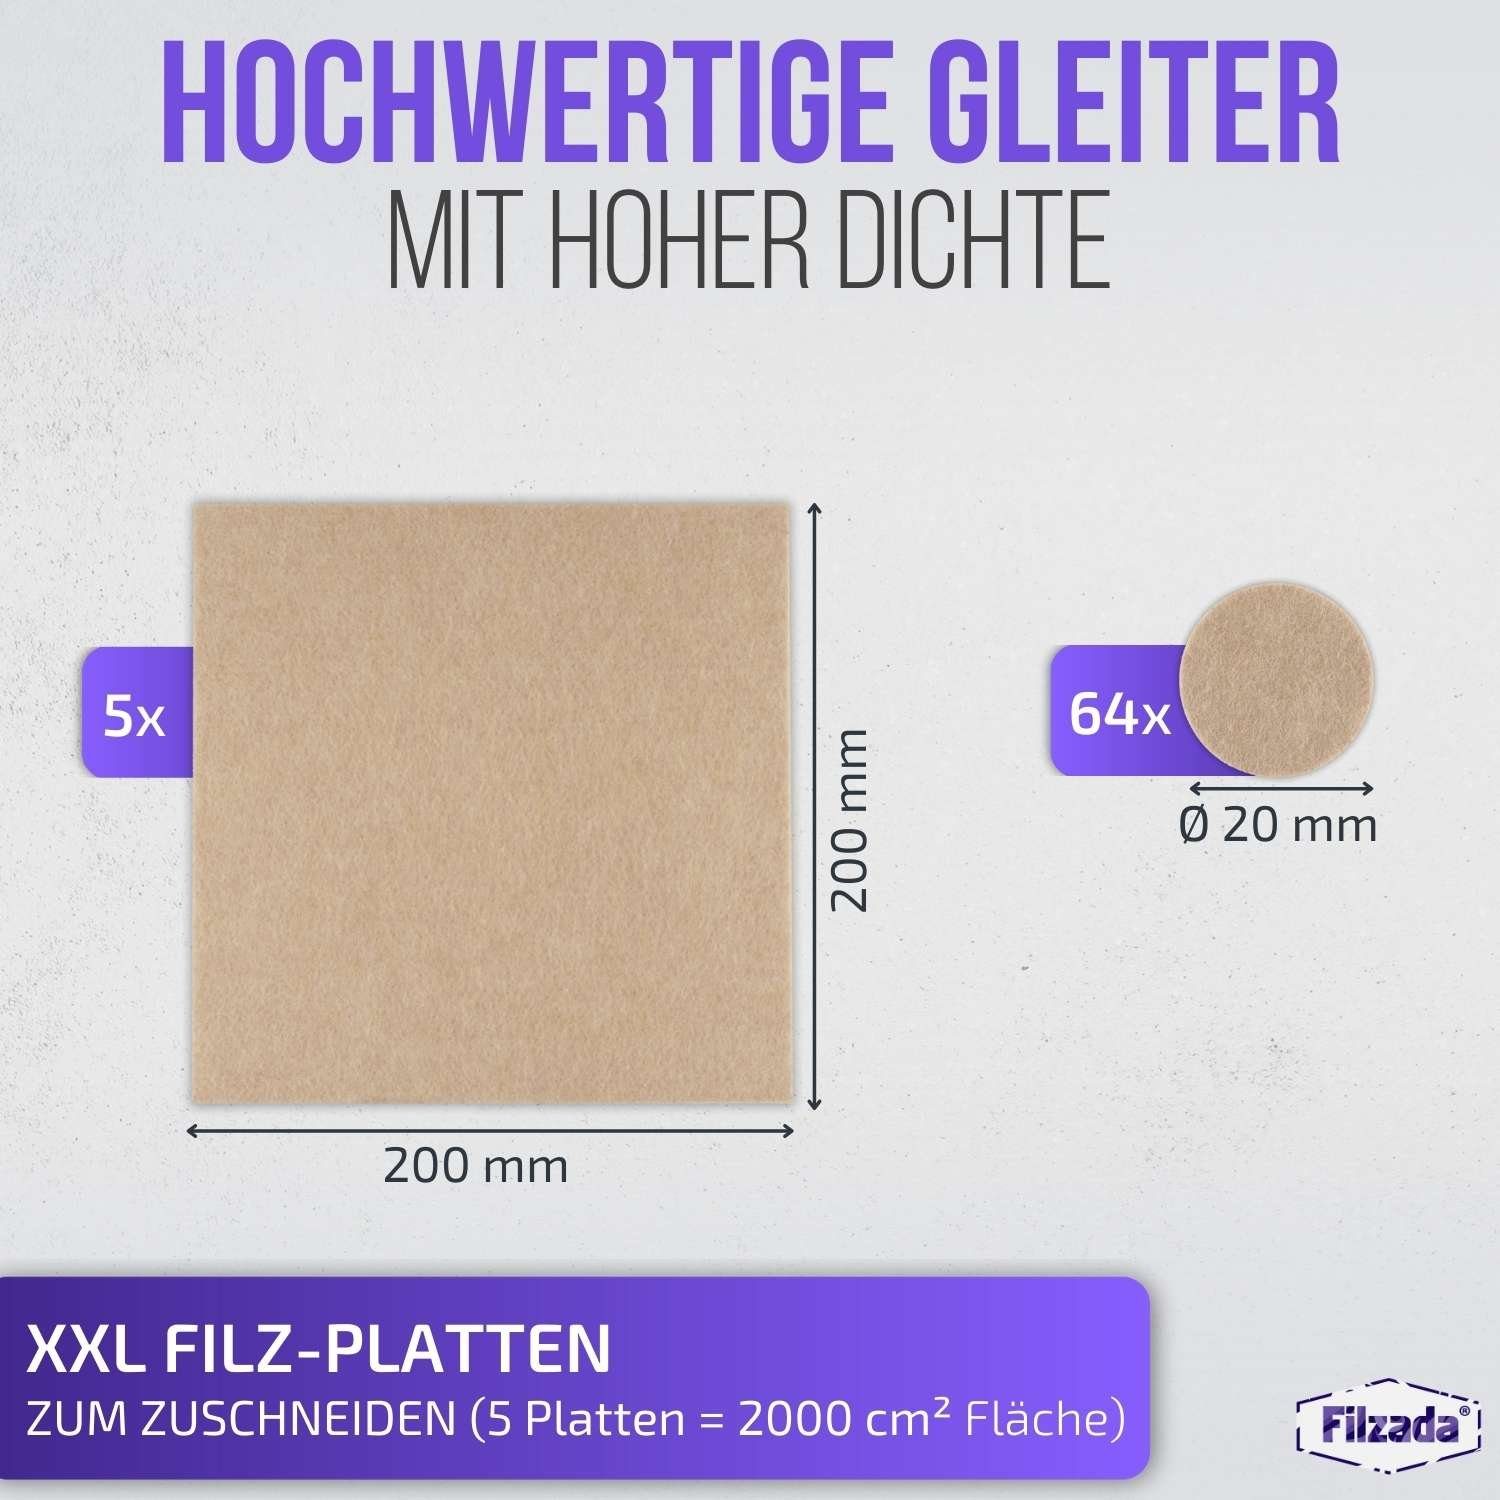 Filzada Filzgleiter Filzgleiter Selbstklebend Platten 200x200mm Ø20mm & Möbelgleiter Beige Set